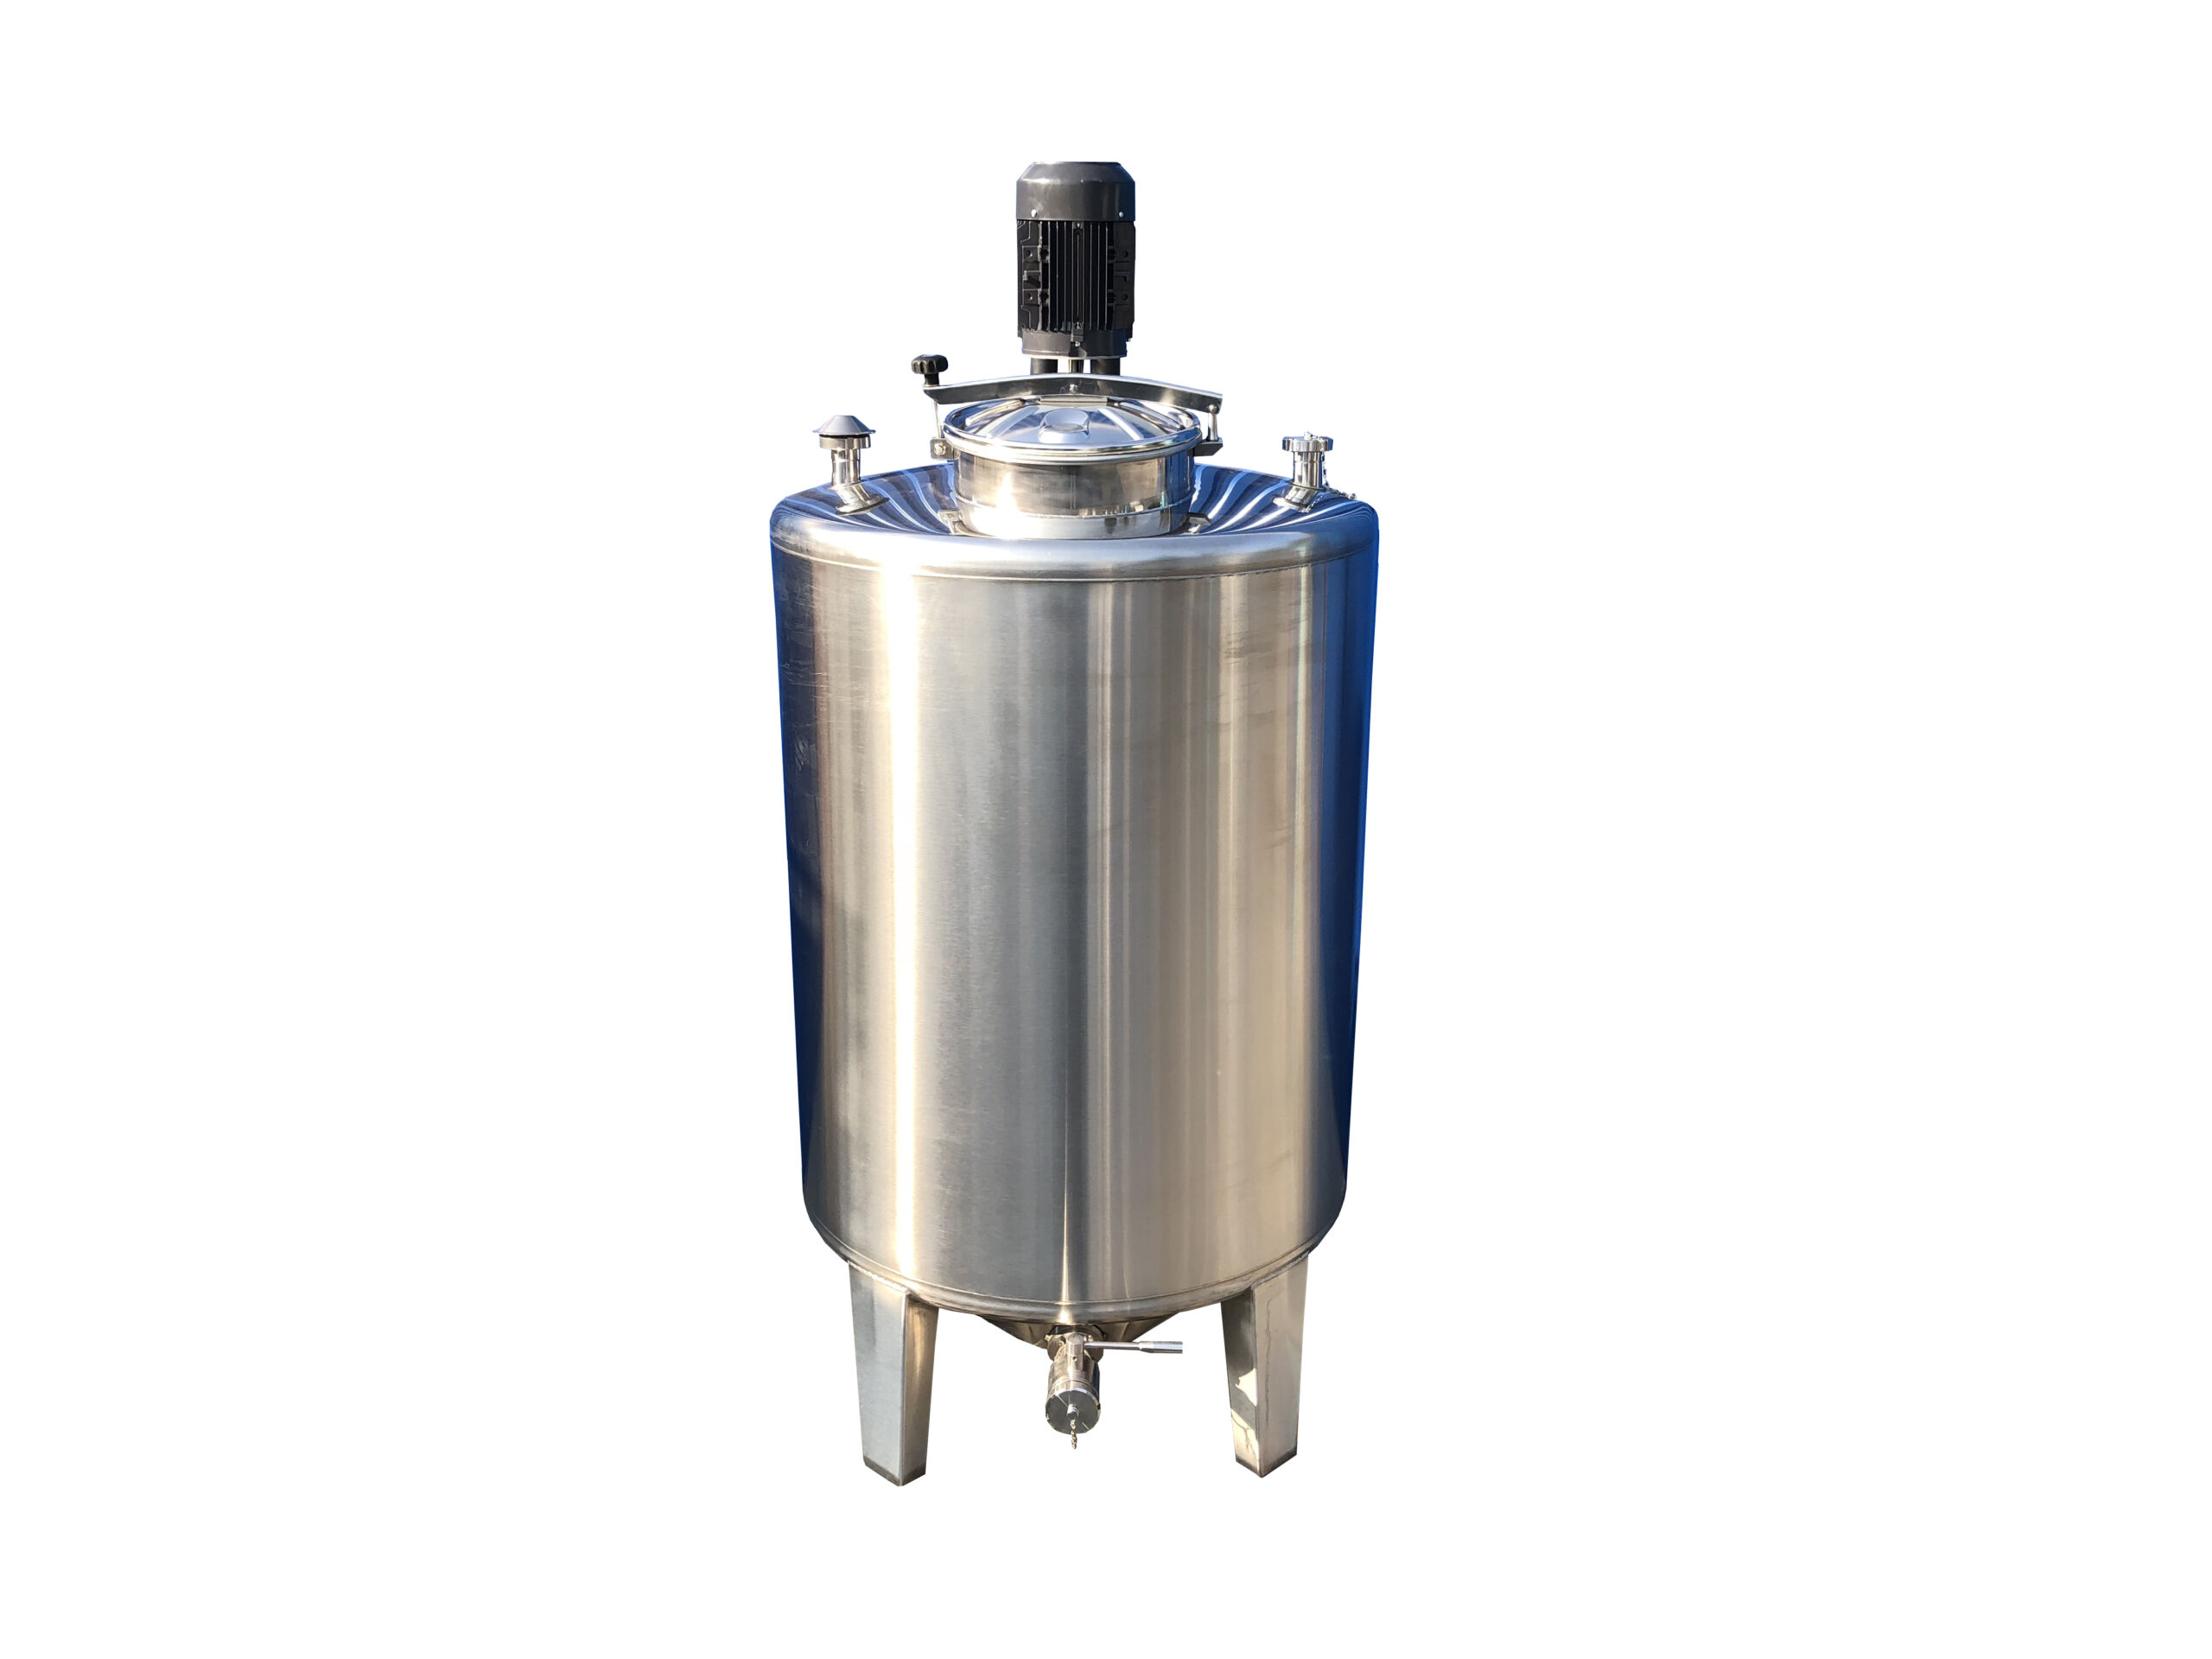 Frischwassertank 49 Liter, mit Rollen, Reinigungsöffnung, Öffnung